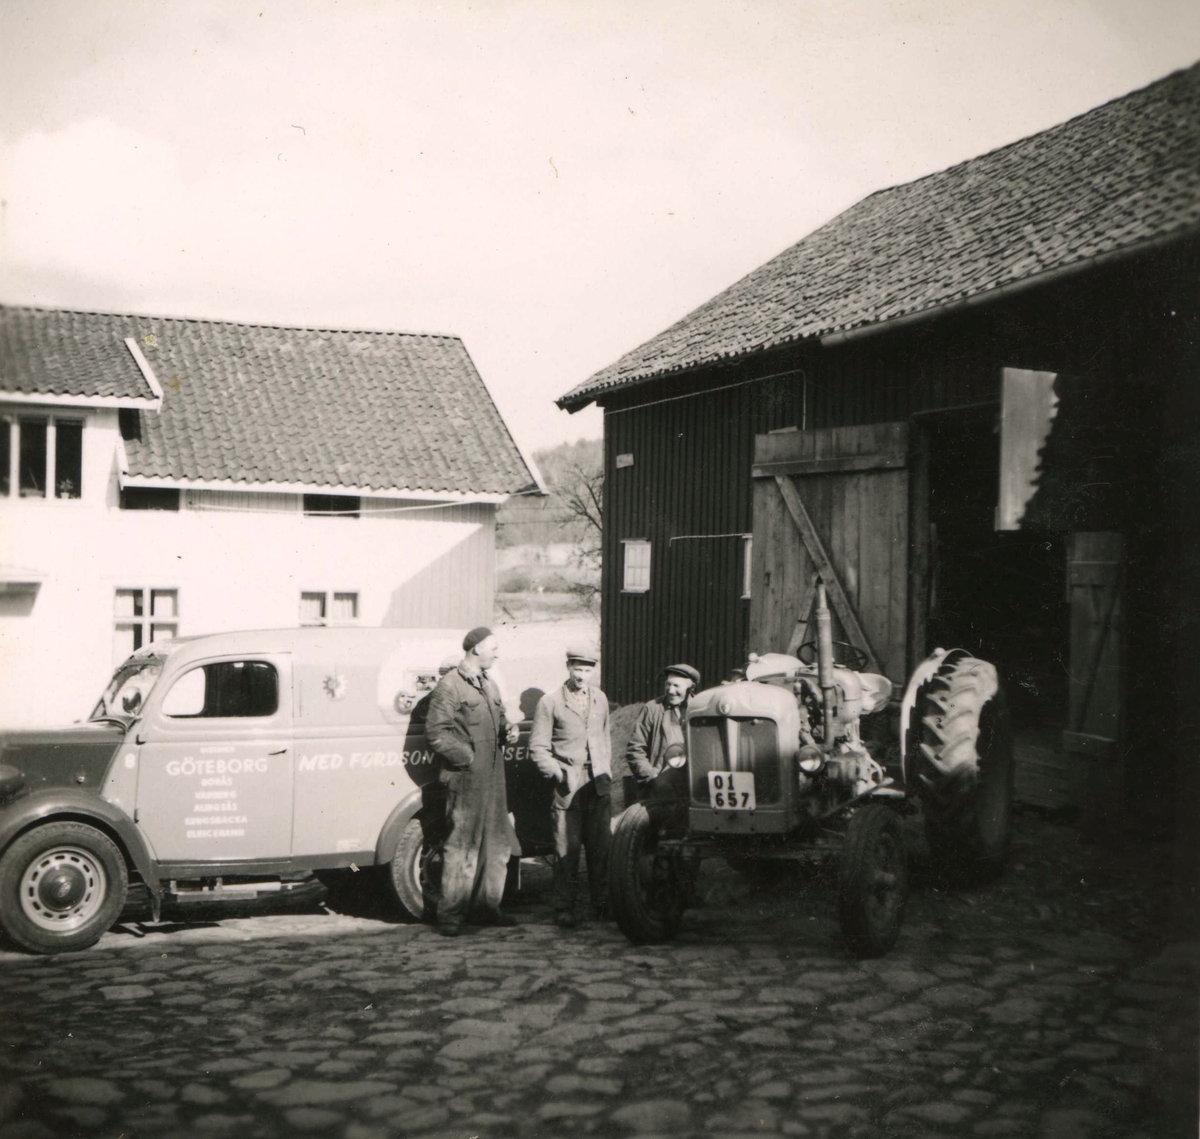 Gårdsplanen vid Ekans gård, Ekan 1:1, år 1953. 
Från vänster: 1. traktorreparatör Malte. 2. Rolf Svensson (1909 - 1989), ägare av gården. 3. Robert Pettersson (1886 - 1968), dräng på gården sedan 1912. Relaterade motiv: A1149 och A1152.